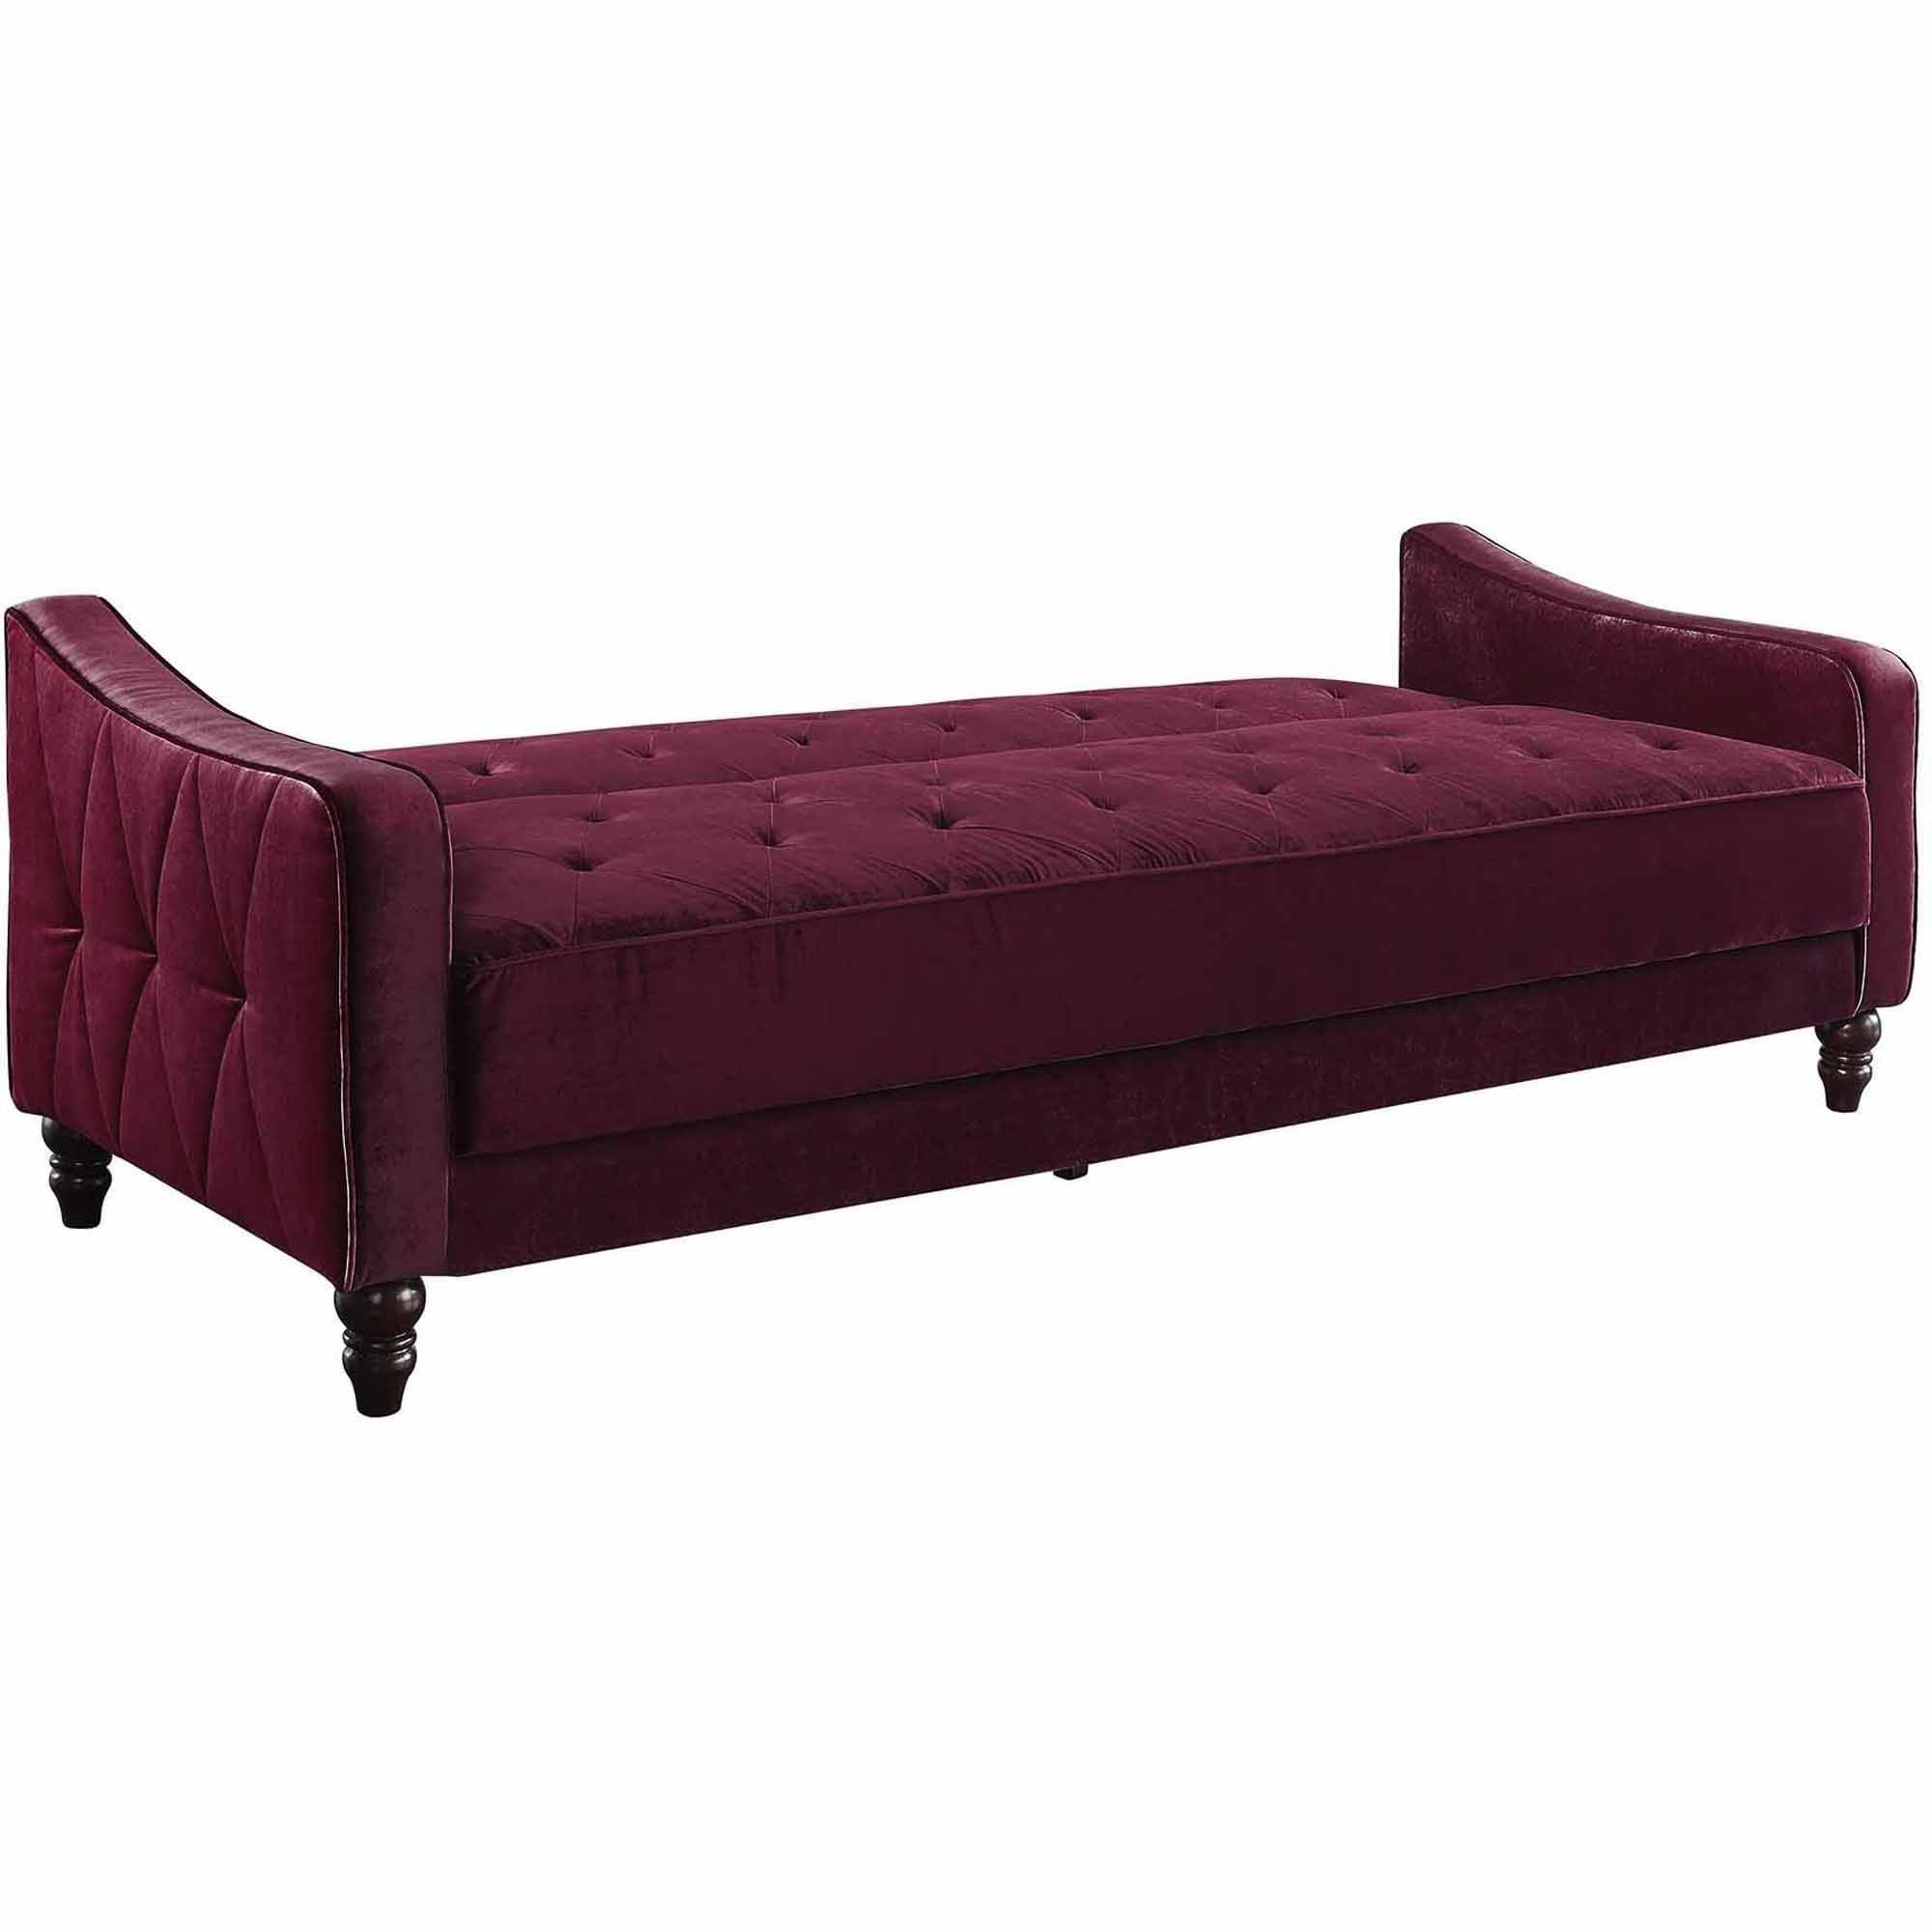 Novogratz Vintage Tufted Sofa Sleeper Ii, Multiple Colors Intended For Ava Velvet Tufted Sleeper Sofas (View 12 of 15)